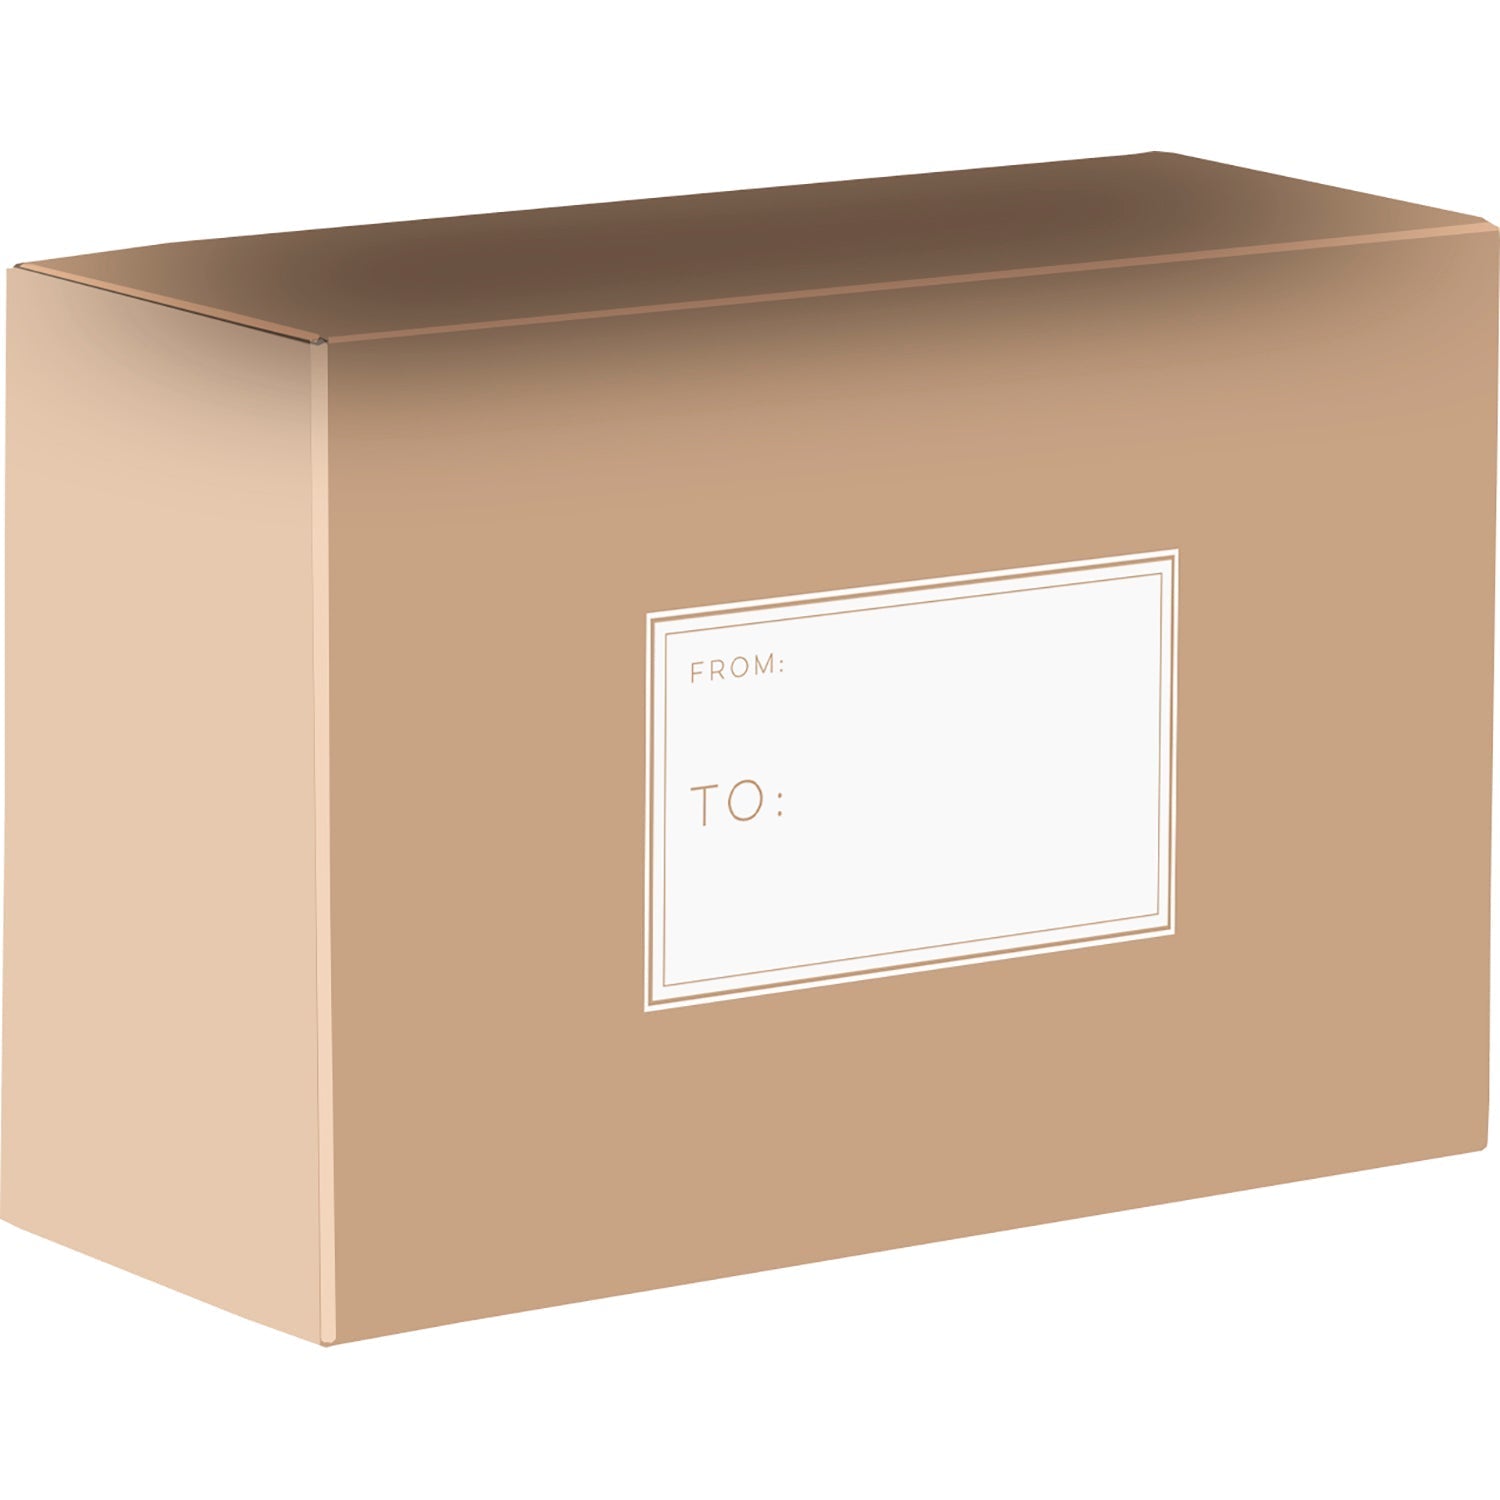 Natural Medium Printed Gift Mailing Boxes